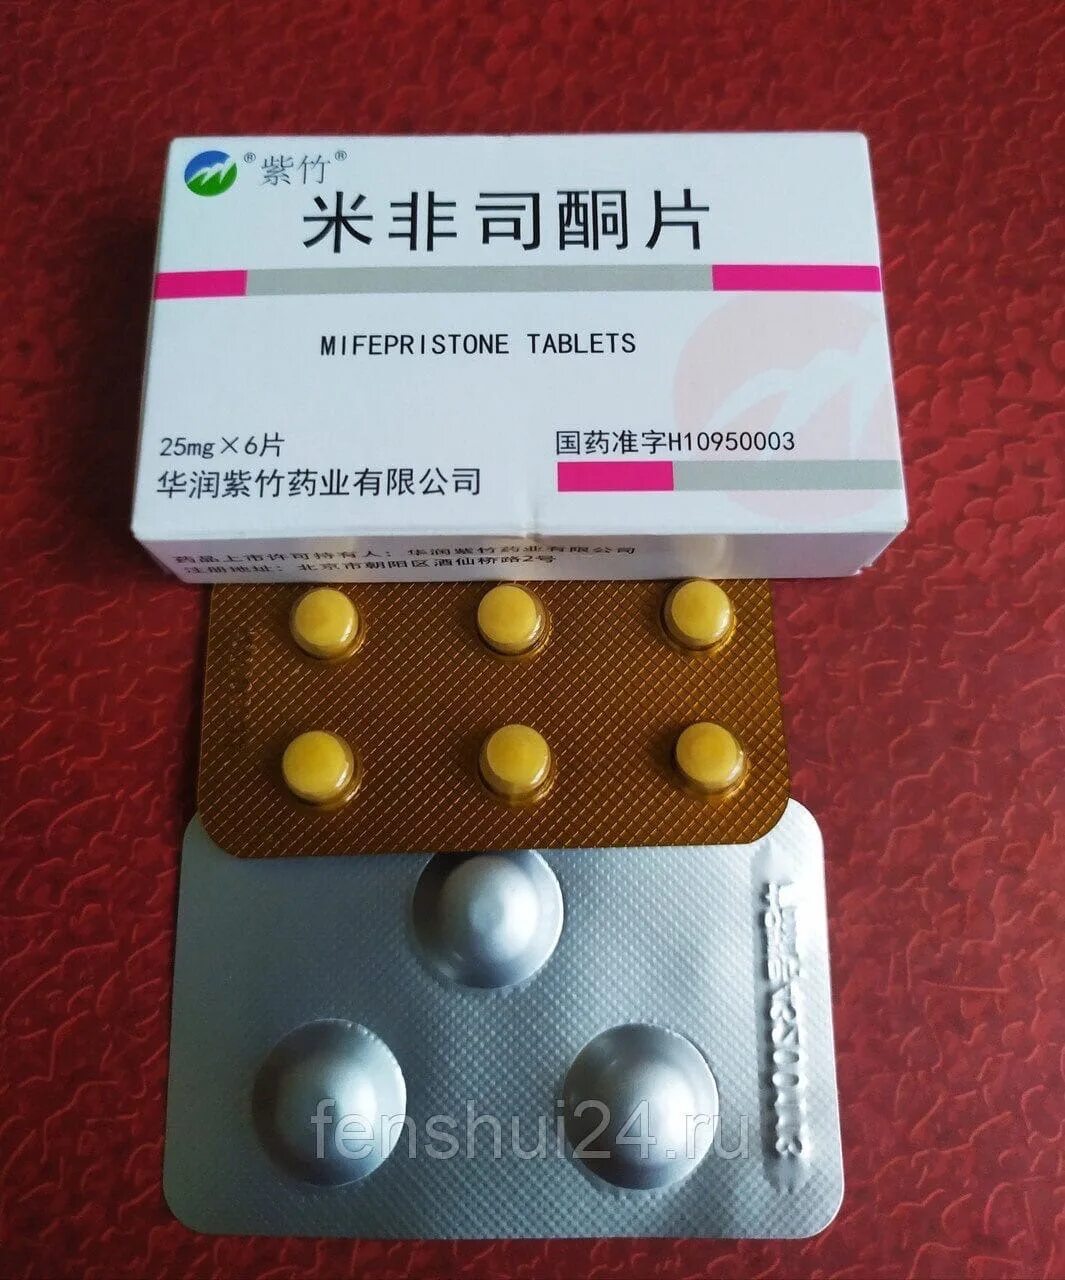 Где купить таблетки для прерывания беременности. Китайские таблетки мизопростол мифепристон. Китайские таблетки аборт мифепристон. Мифепристон 25 мг китайские таблетки. Китайские таблетки для прерывания ранней беременности.